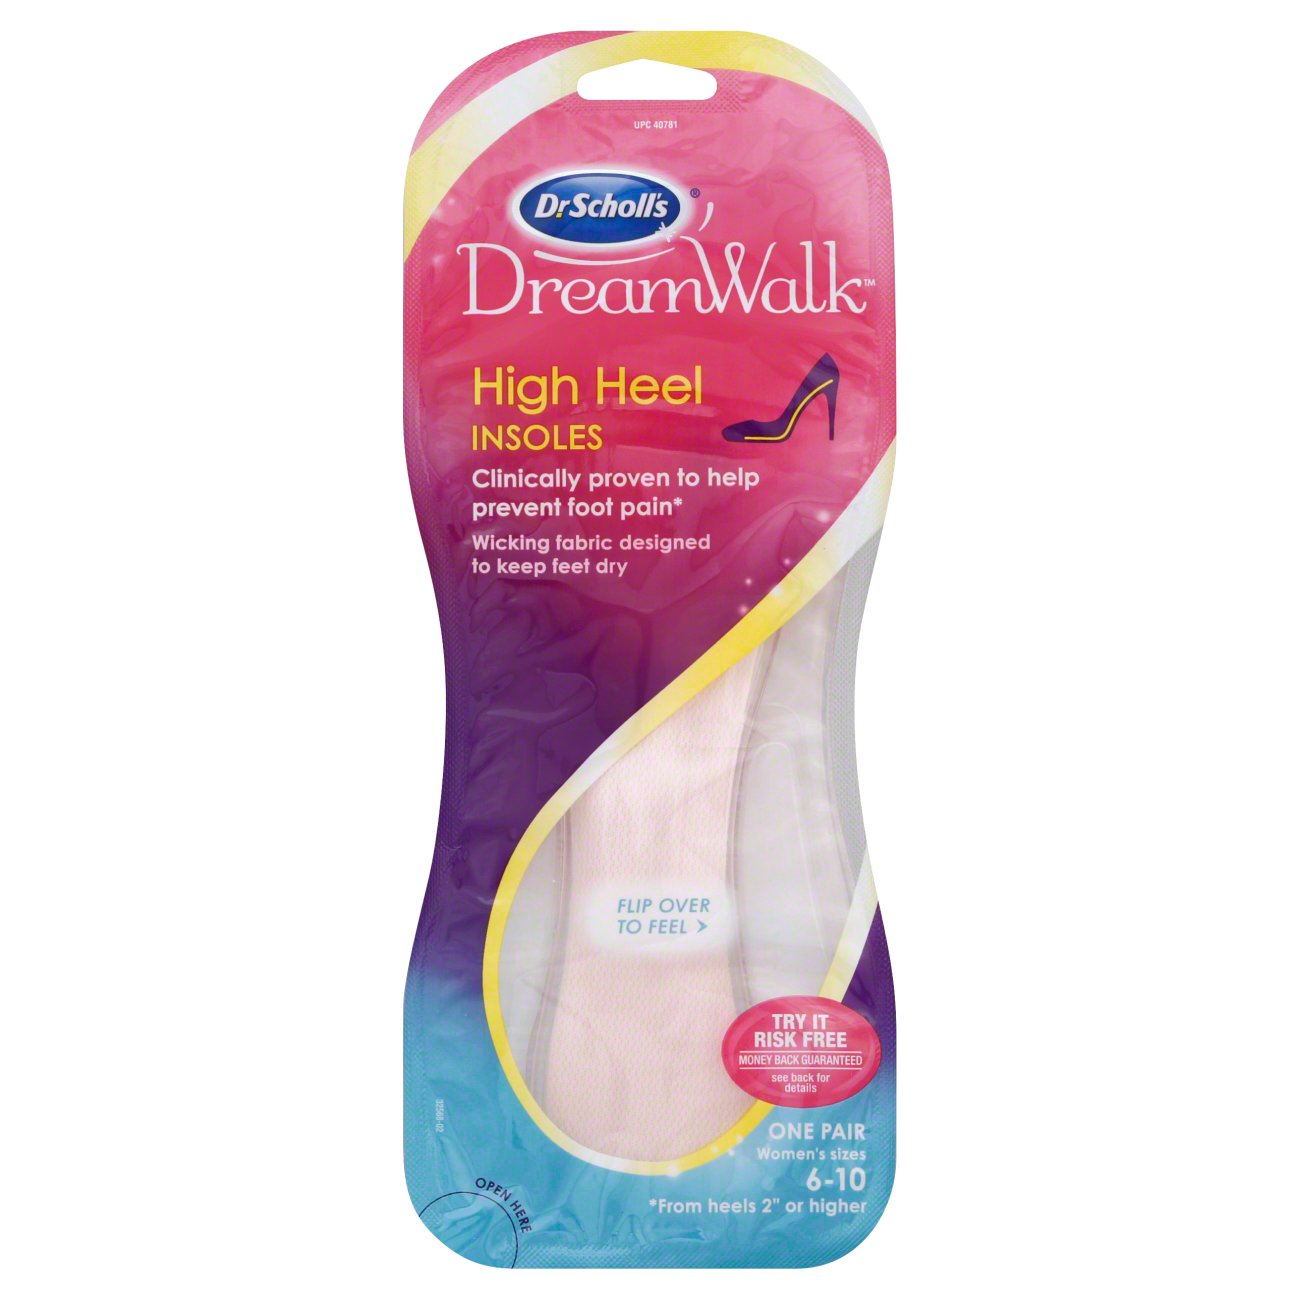 dr scholl's dreamwalk heel liners